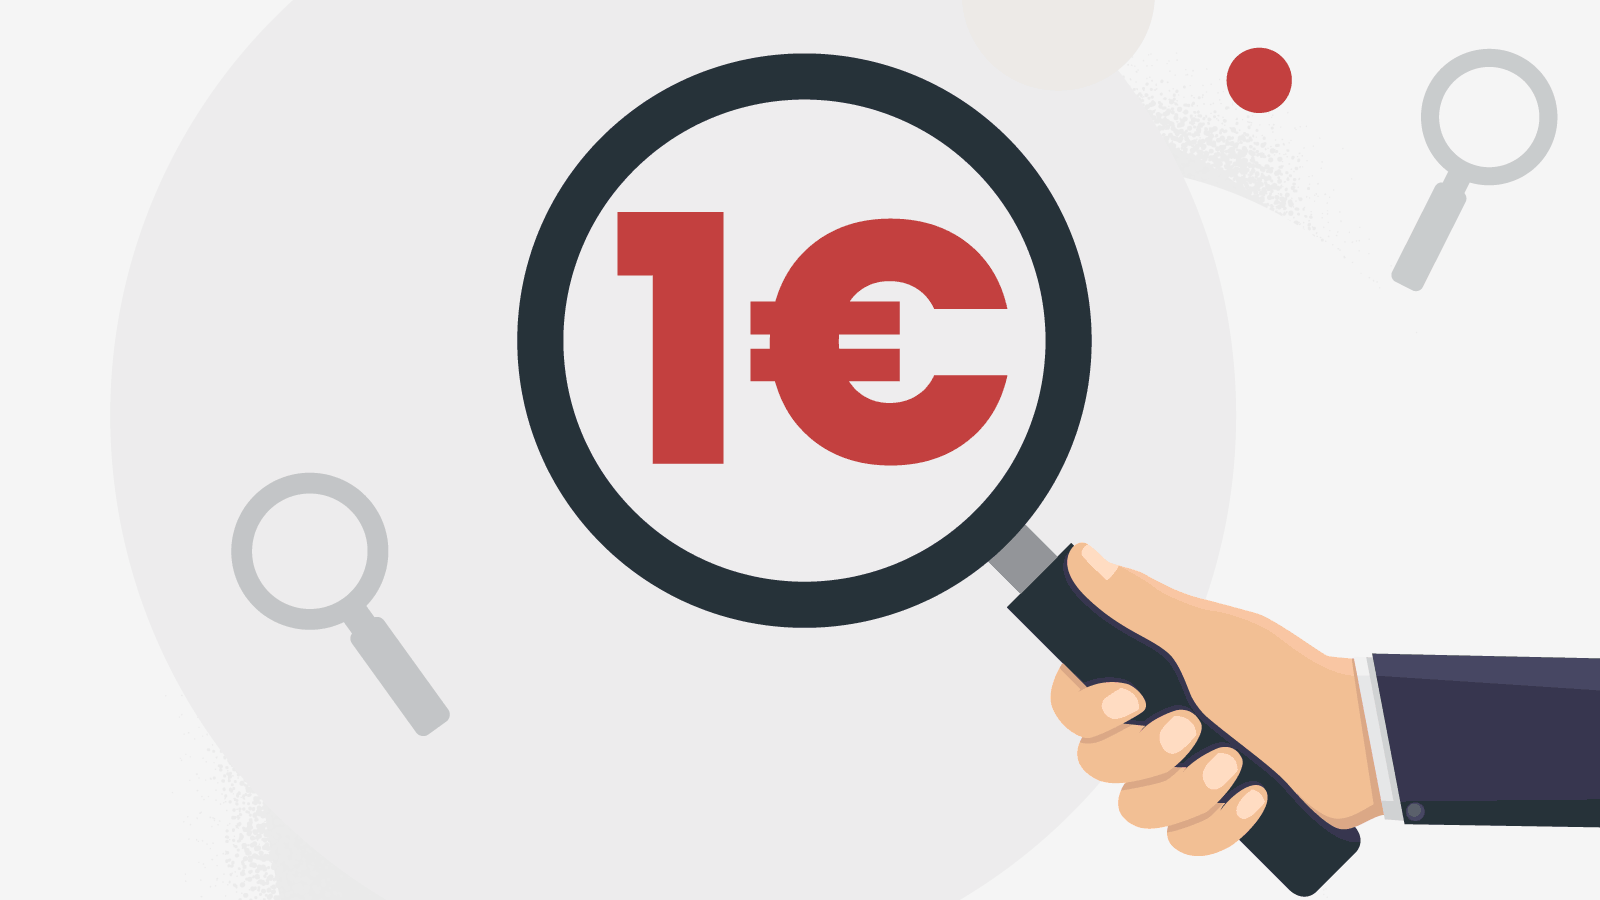 Dépôt minimum 1 Euro | casinos en euros, seulement 1 € de dépôt minimum